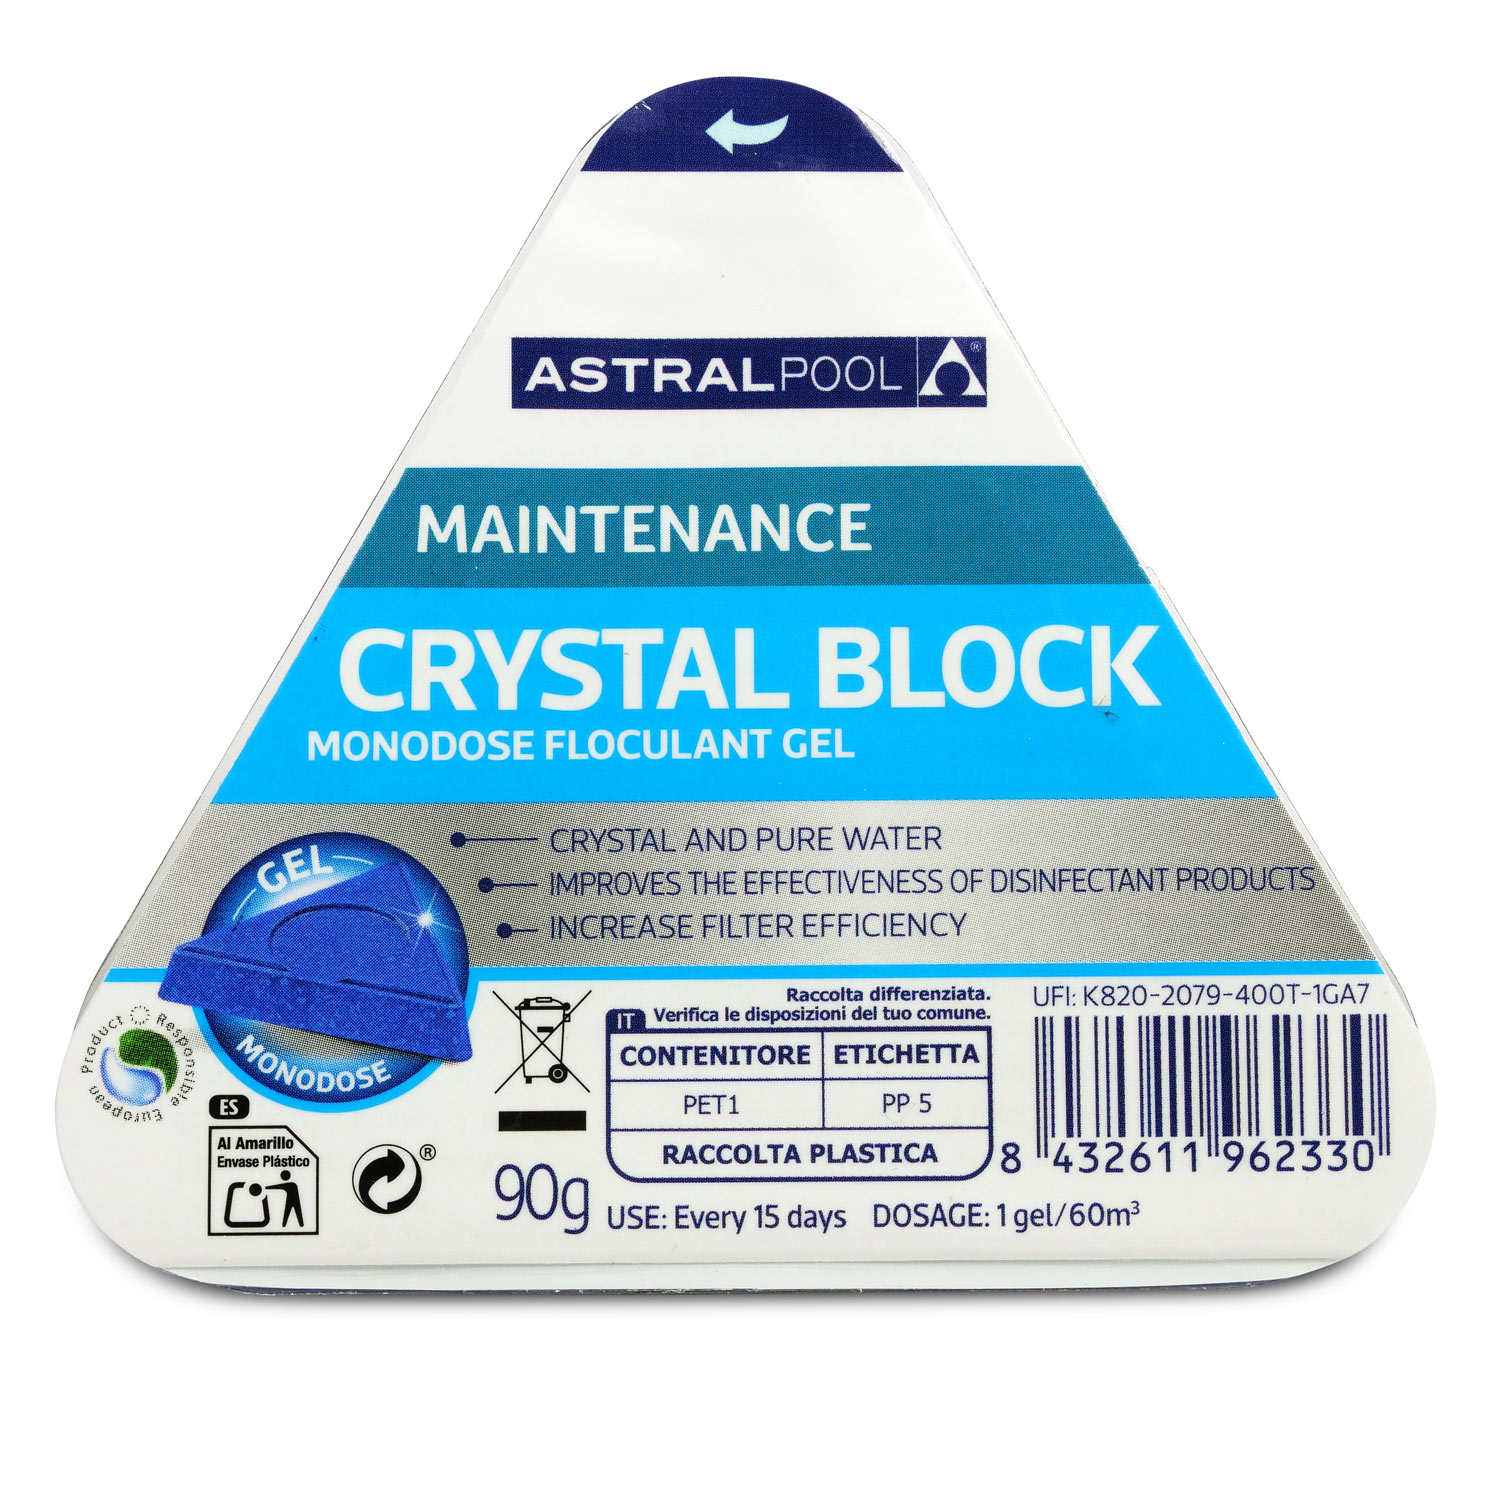 Astralpool Crystal Block Flockungsmittel (Gel) im handlichen Dosierblock